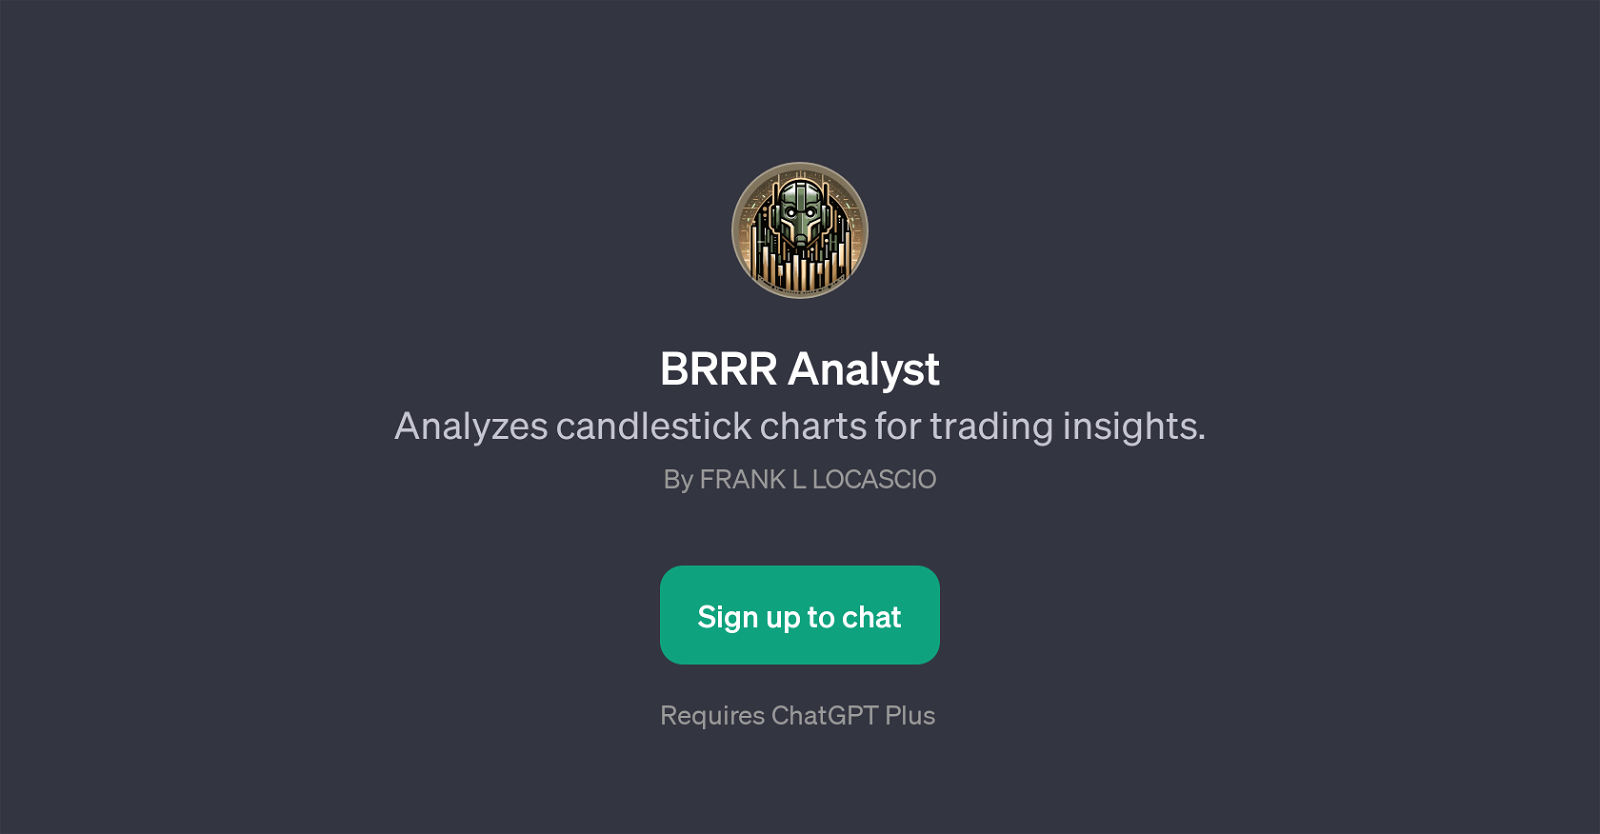 BRRR Analyst website